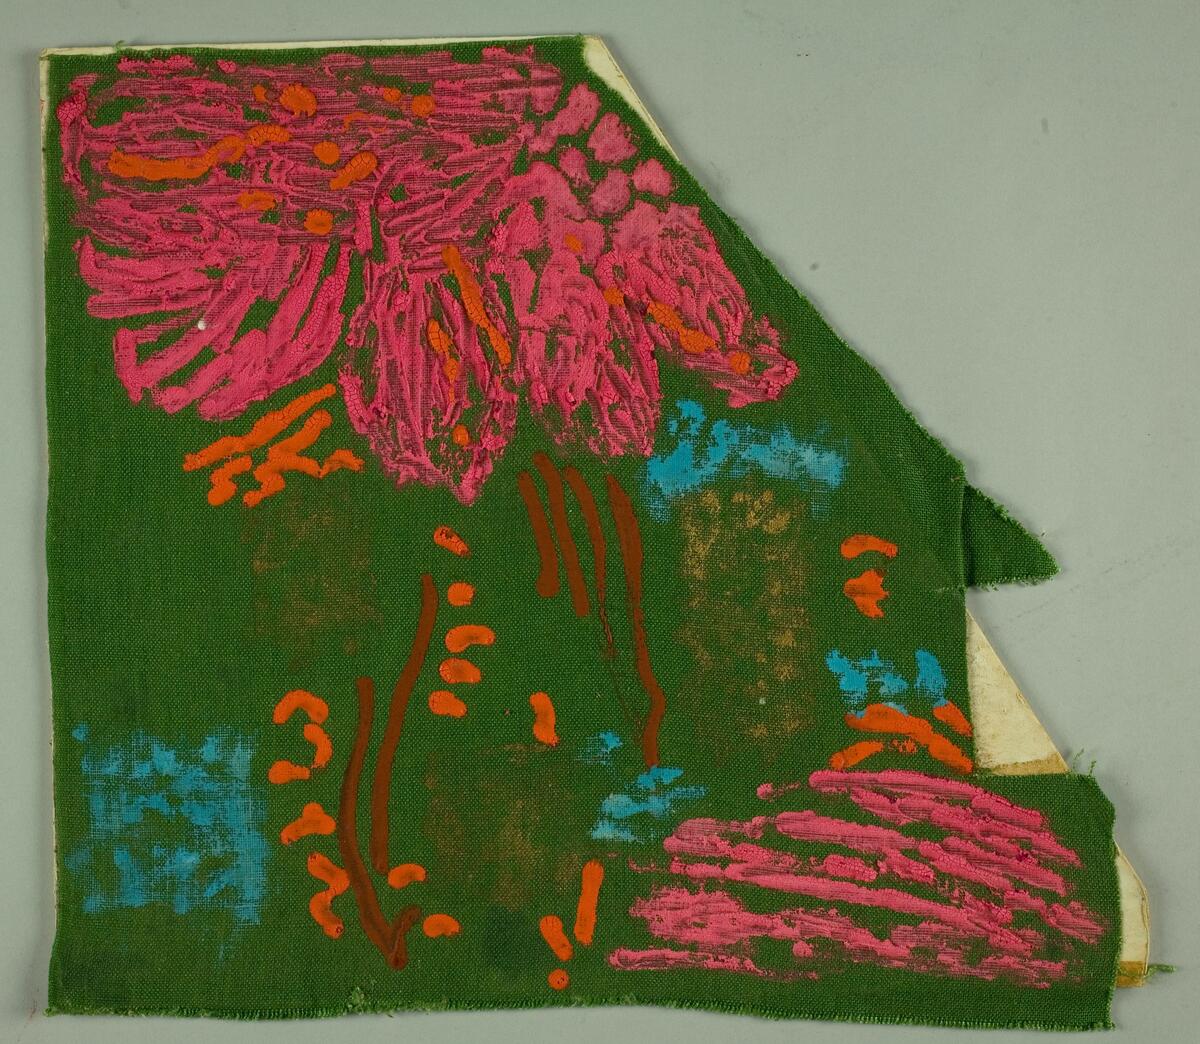 Skissförslag med abstrakta mönster i olika tekniker till tryckta och vävda textilier, bla för Södra Kalmar Läns Hemslöjdsförening. Några skisser med människor.